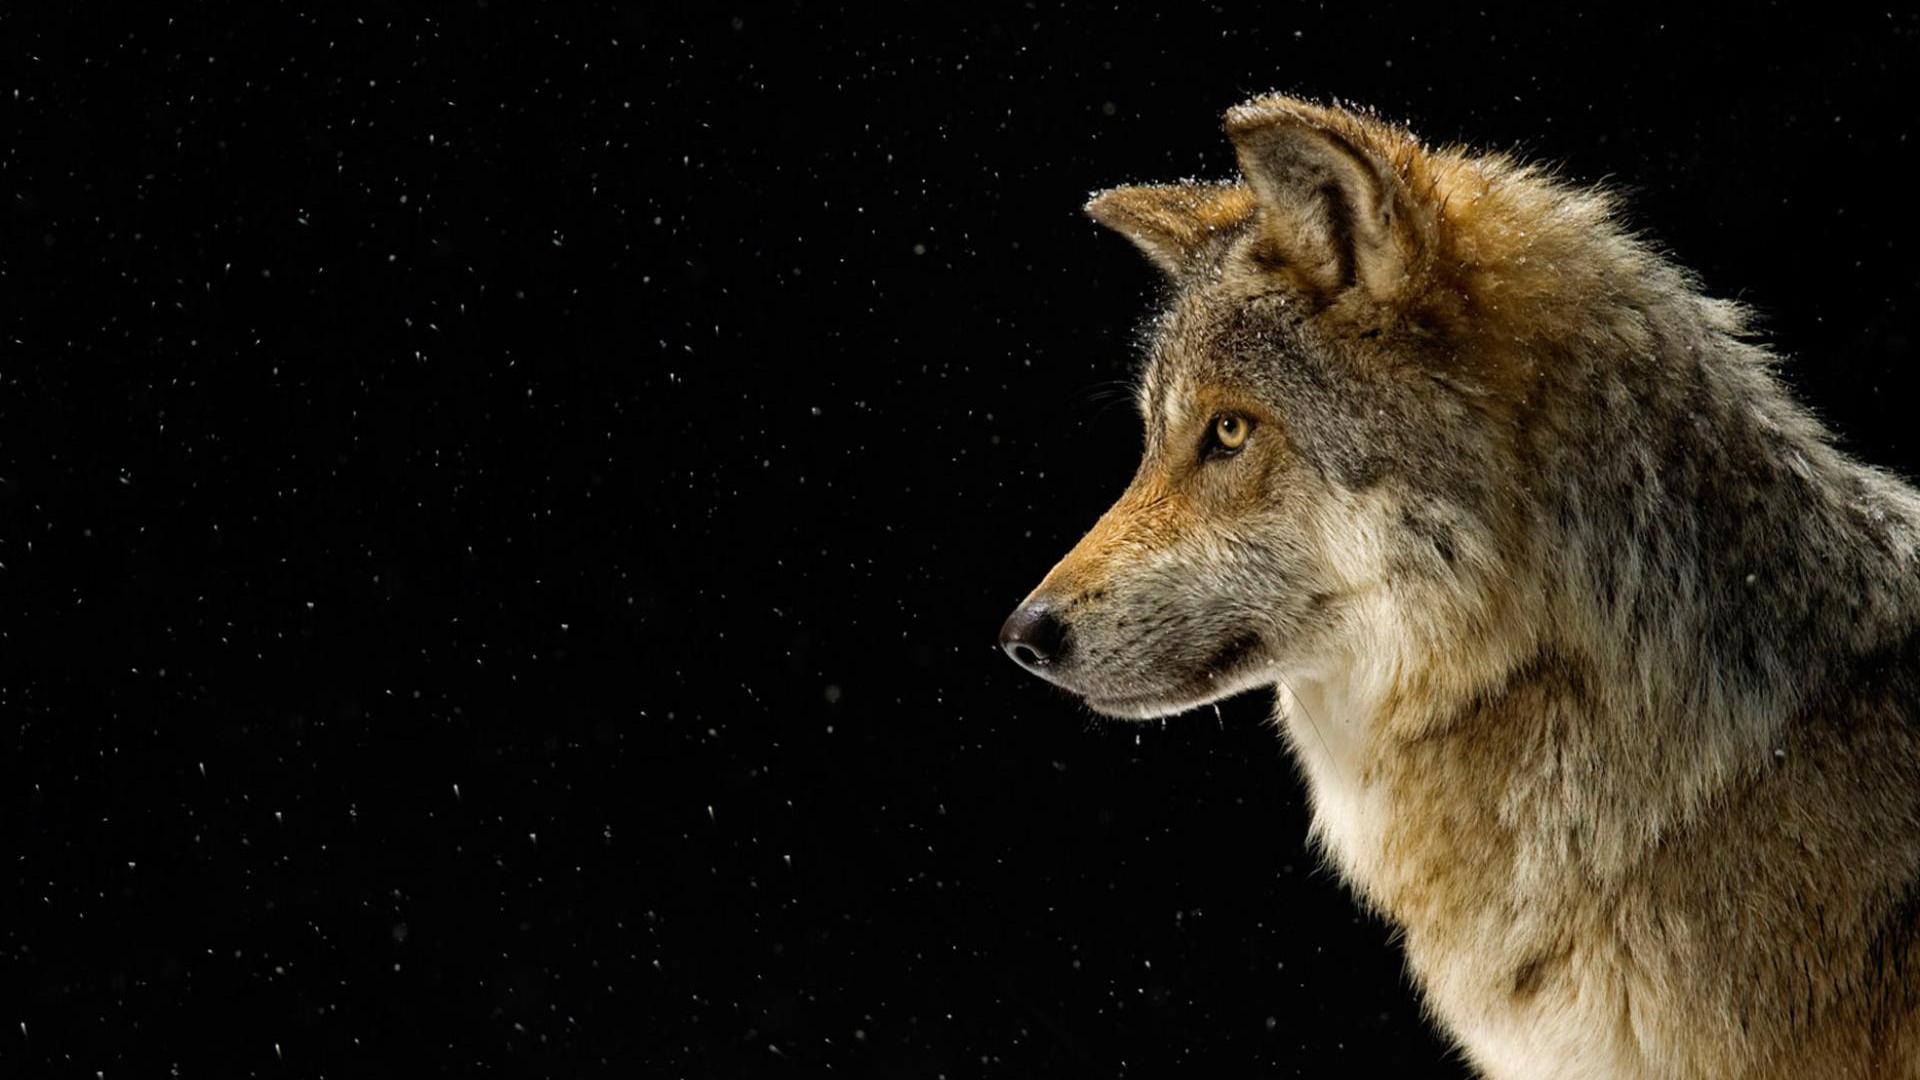 Descarga gratuita de fondo de pantalla para móvil de Animales, Estrellas, Lobo, Wolves.